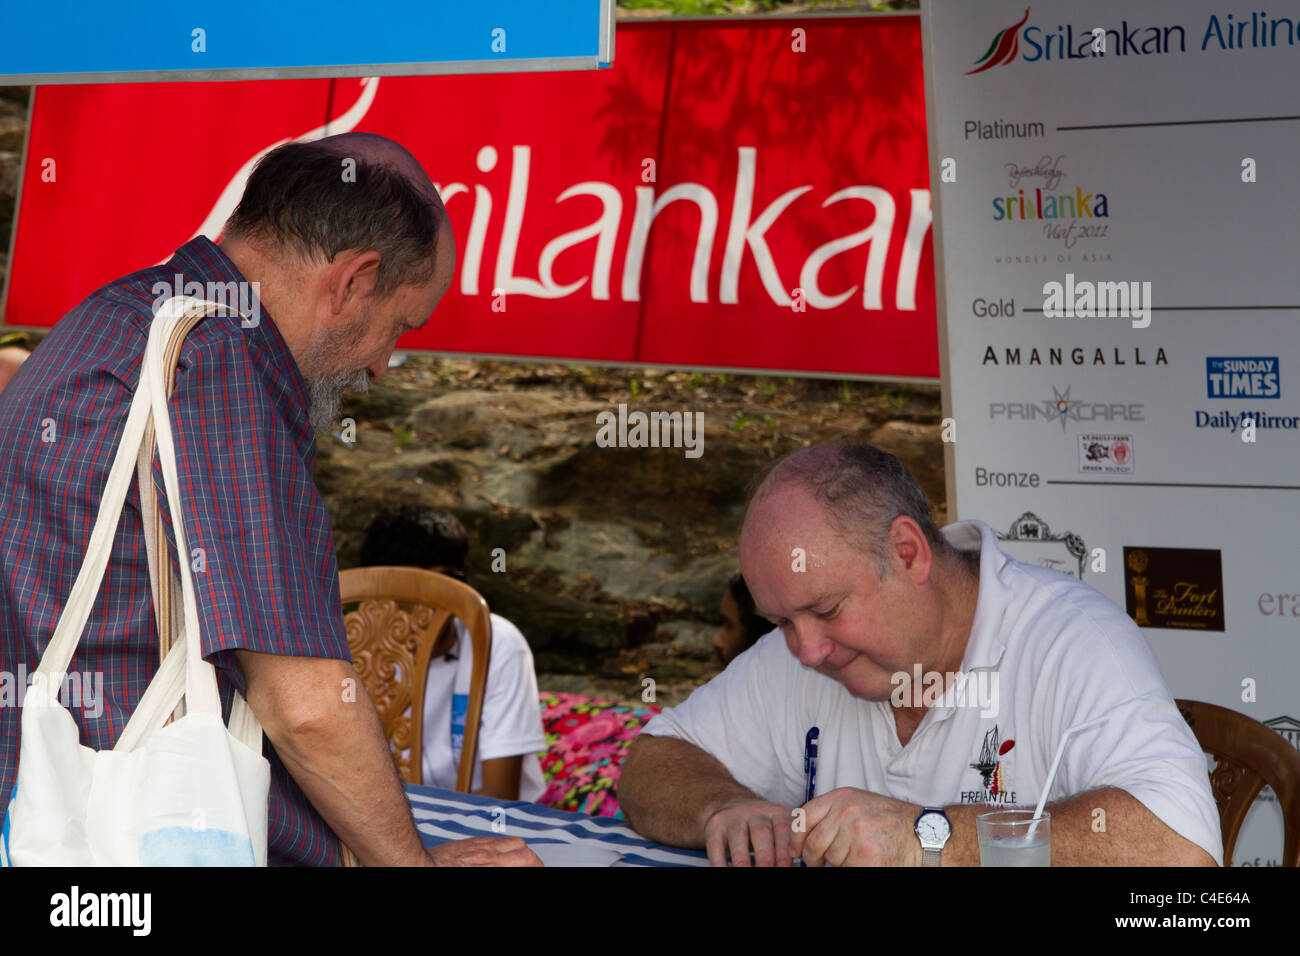 Louis de Bernières author of Captain Corelli's Mandolin signs autographs at the Galle Literary Festival, Sri Lanka. Stock Photo